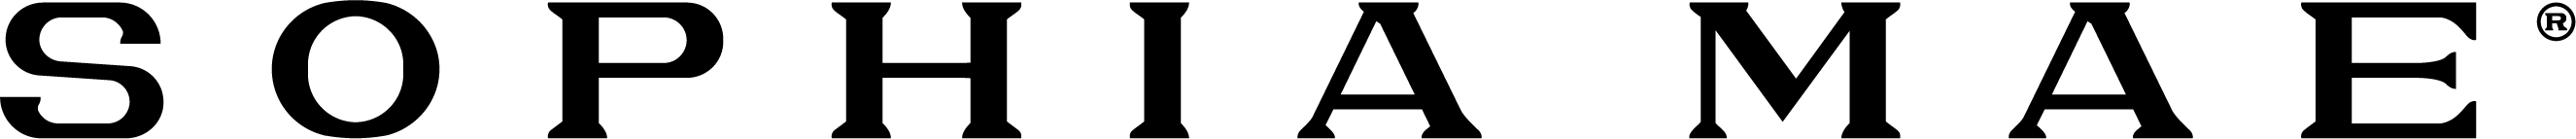 SOPHIA MAE logo